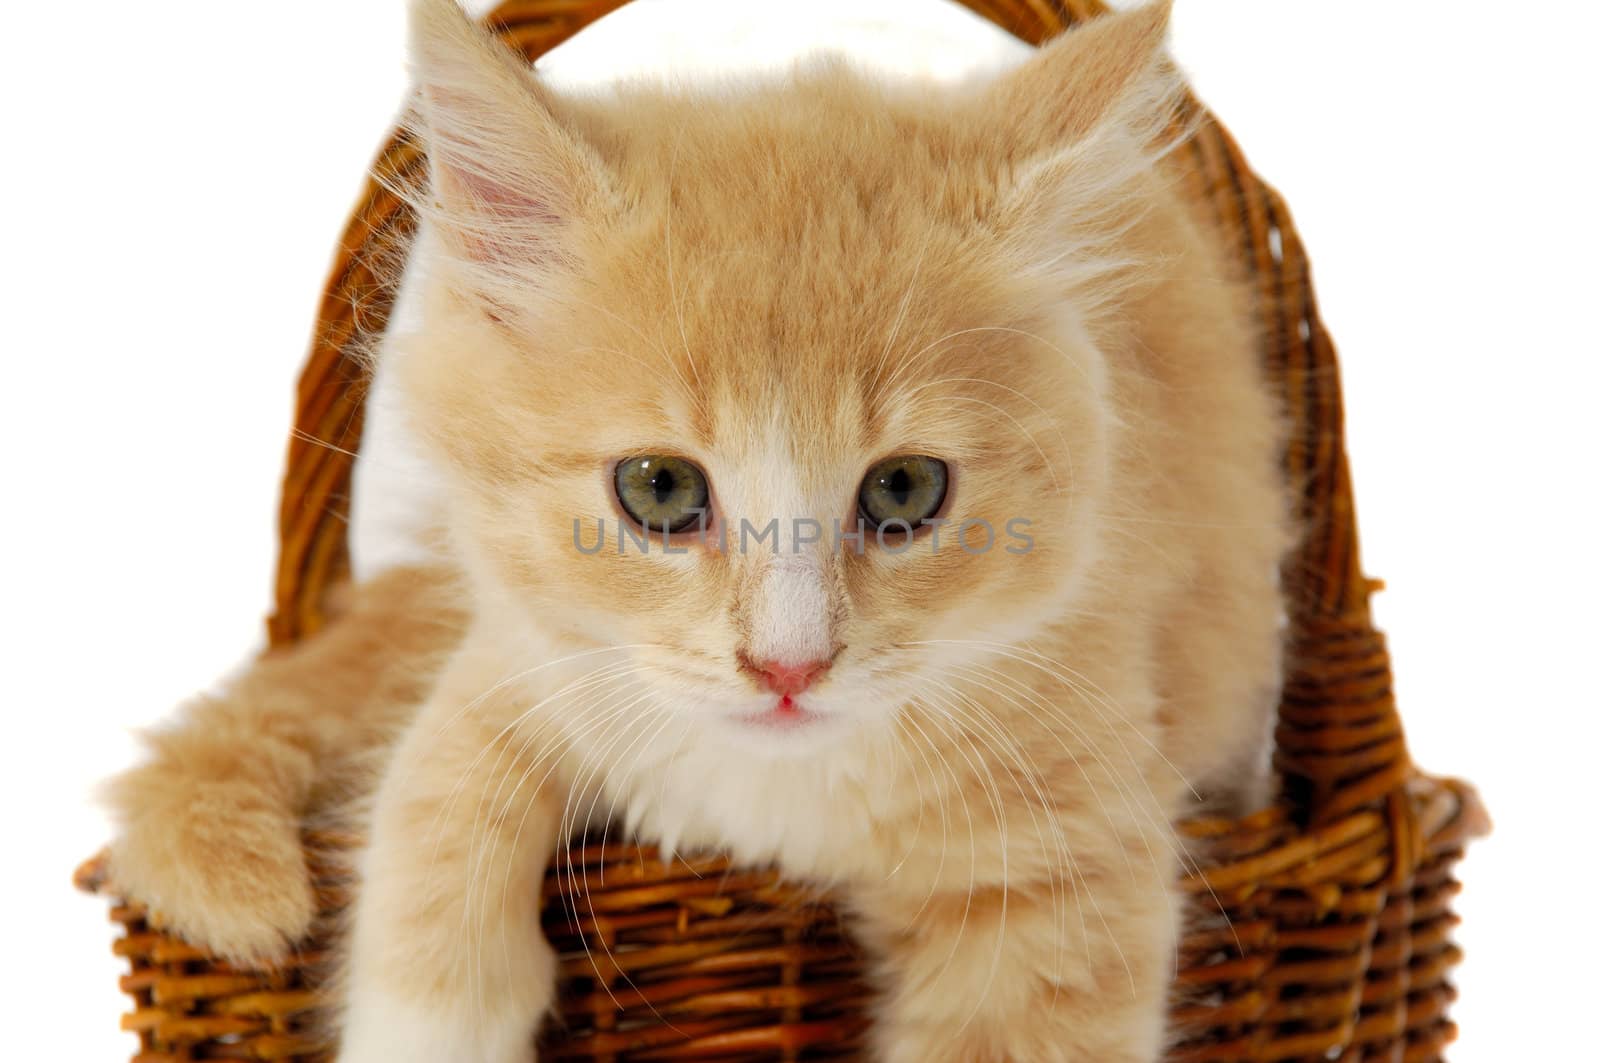 Kitten in basket by cfoto